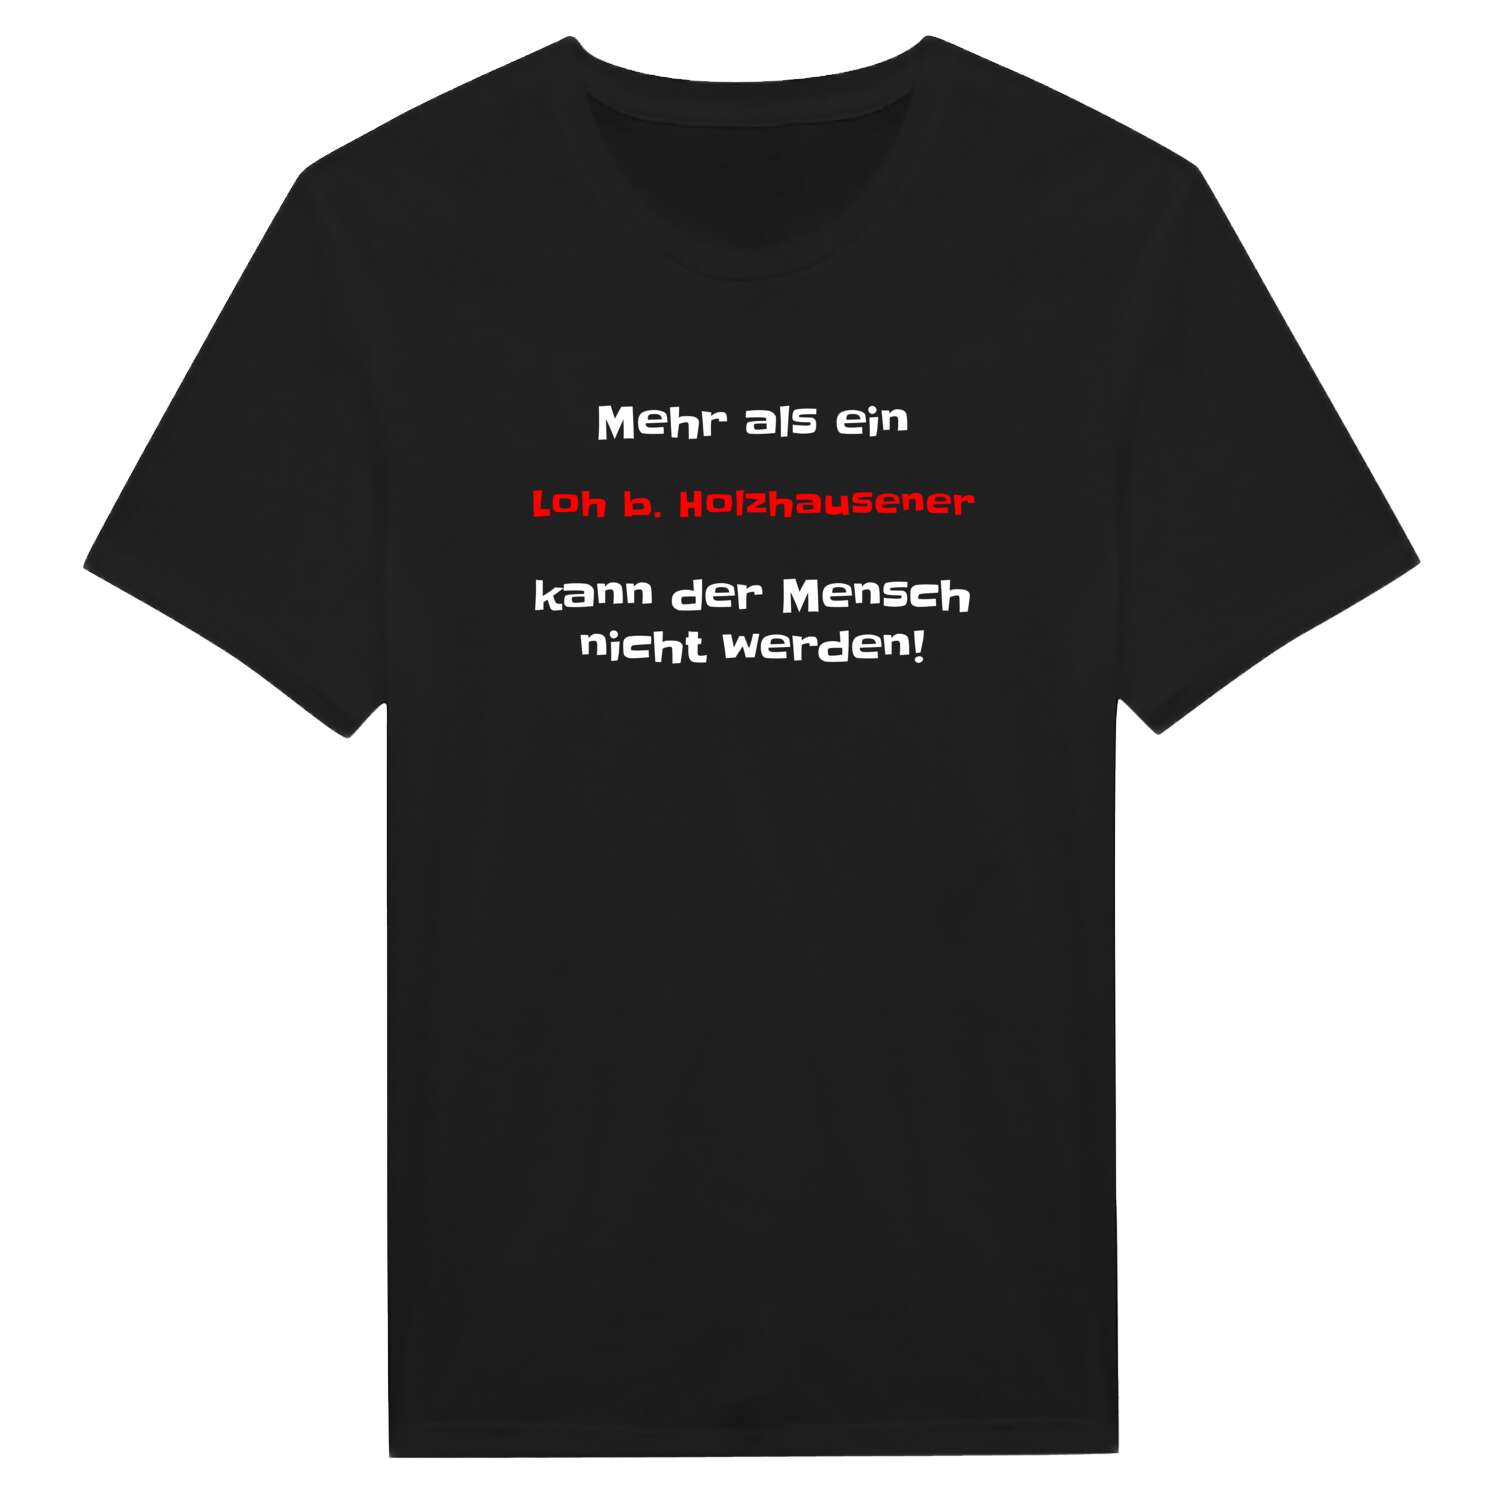 Loh b. Holzhausen T-Shirt »Mehr als ein«